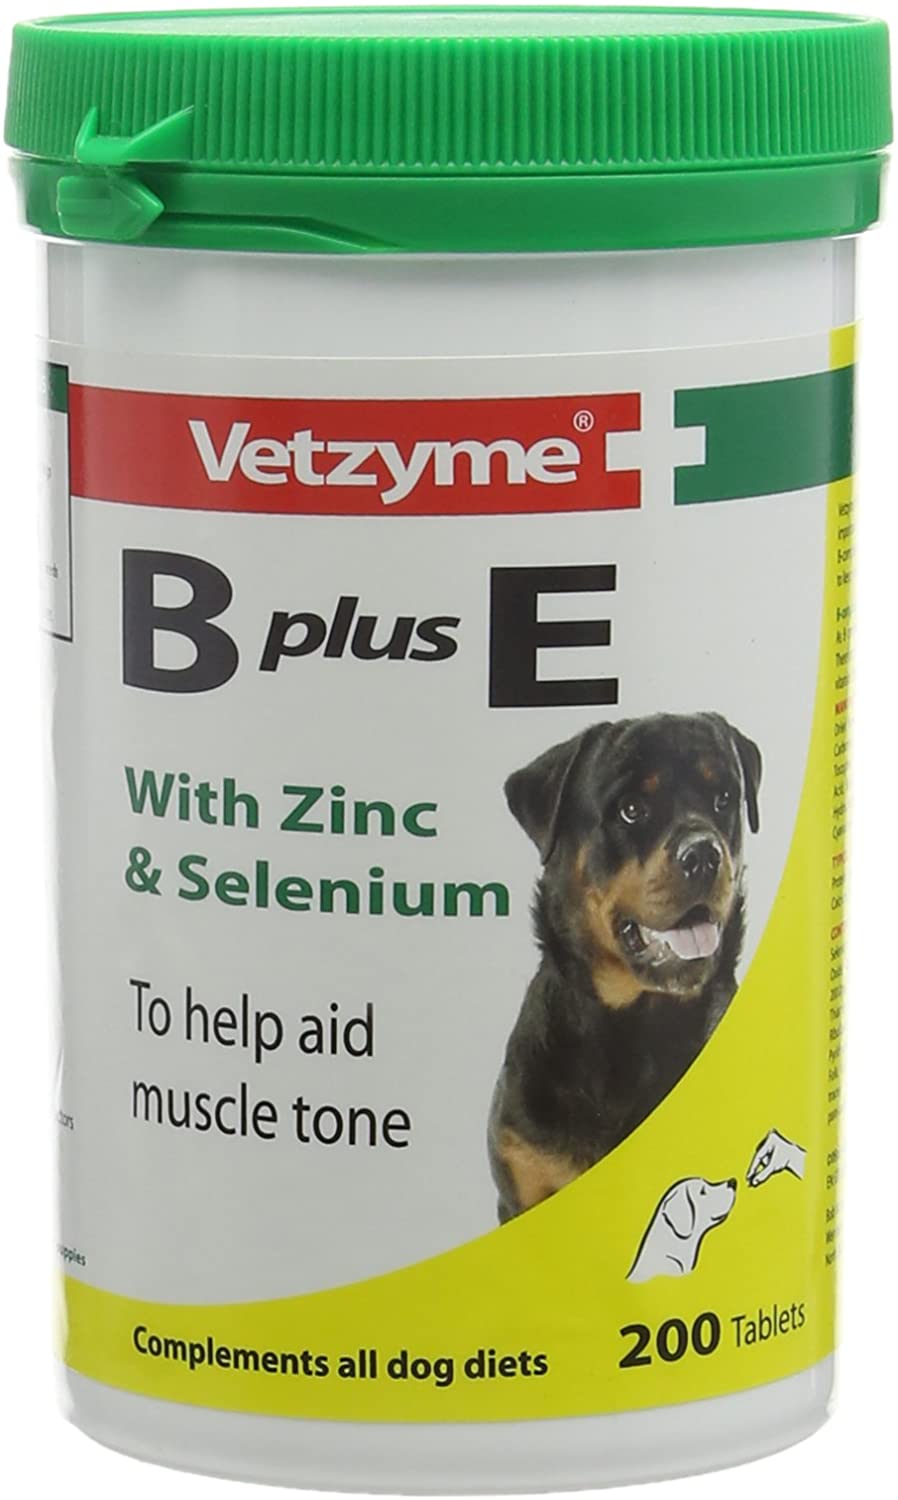  Tabletas Vetzyme B Plus E con zinc y selenio, 200 tabletas 